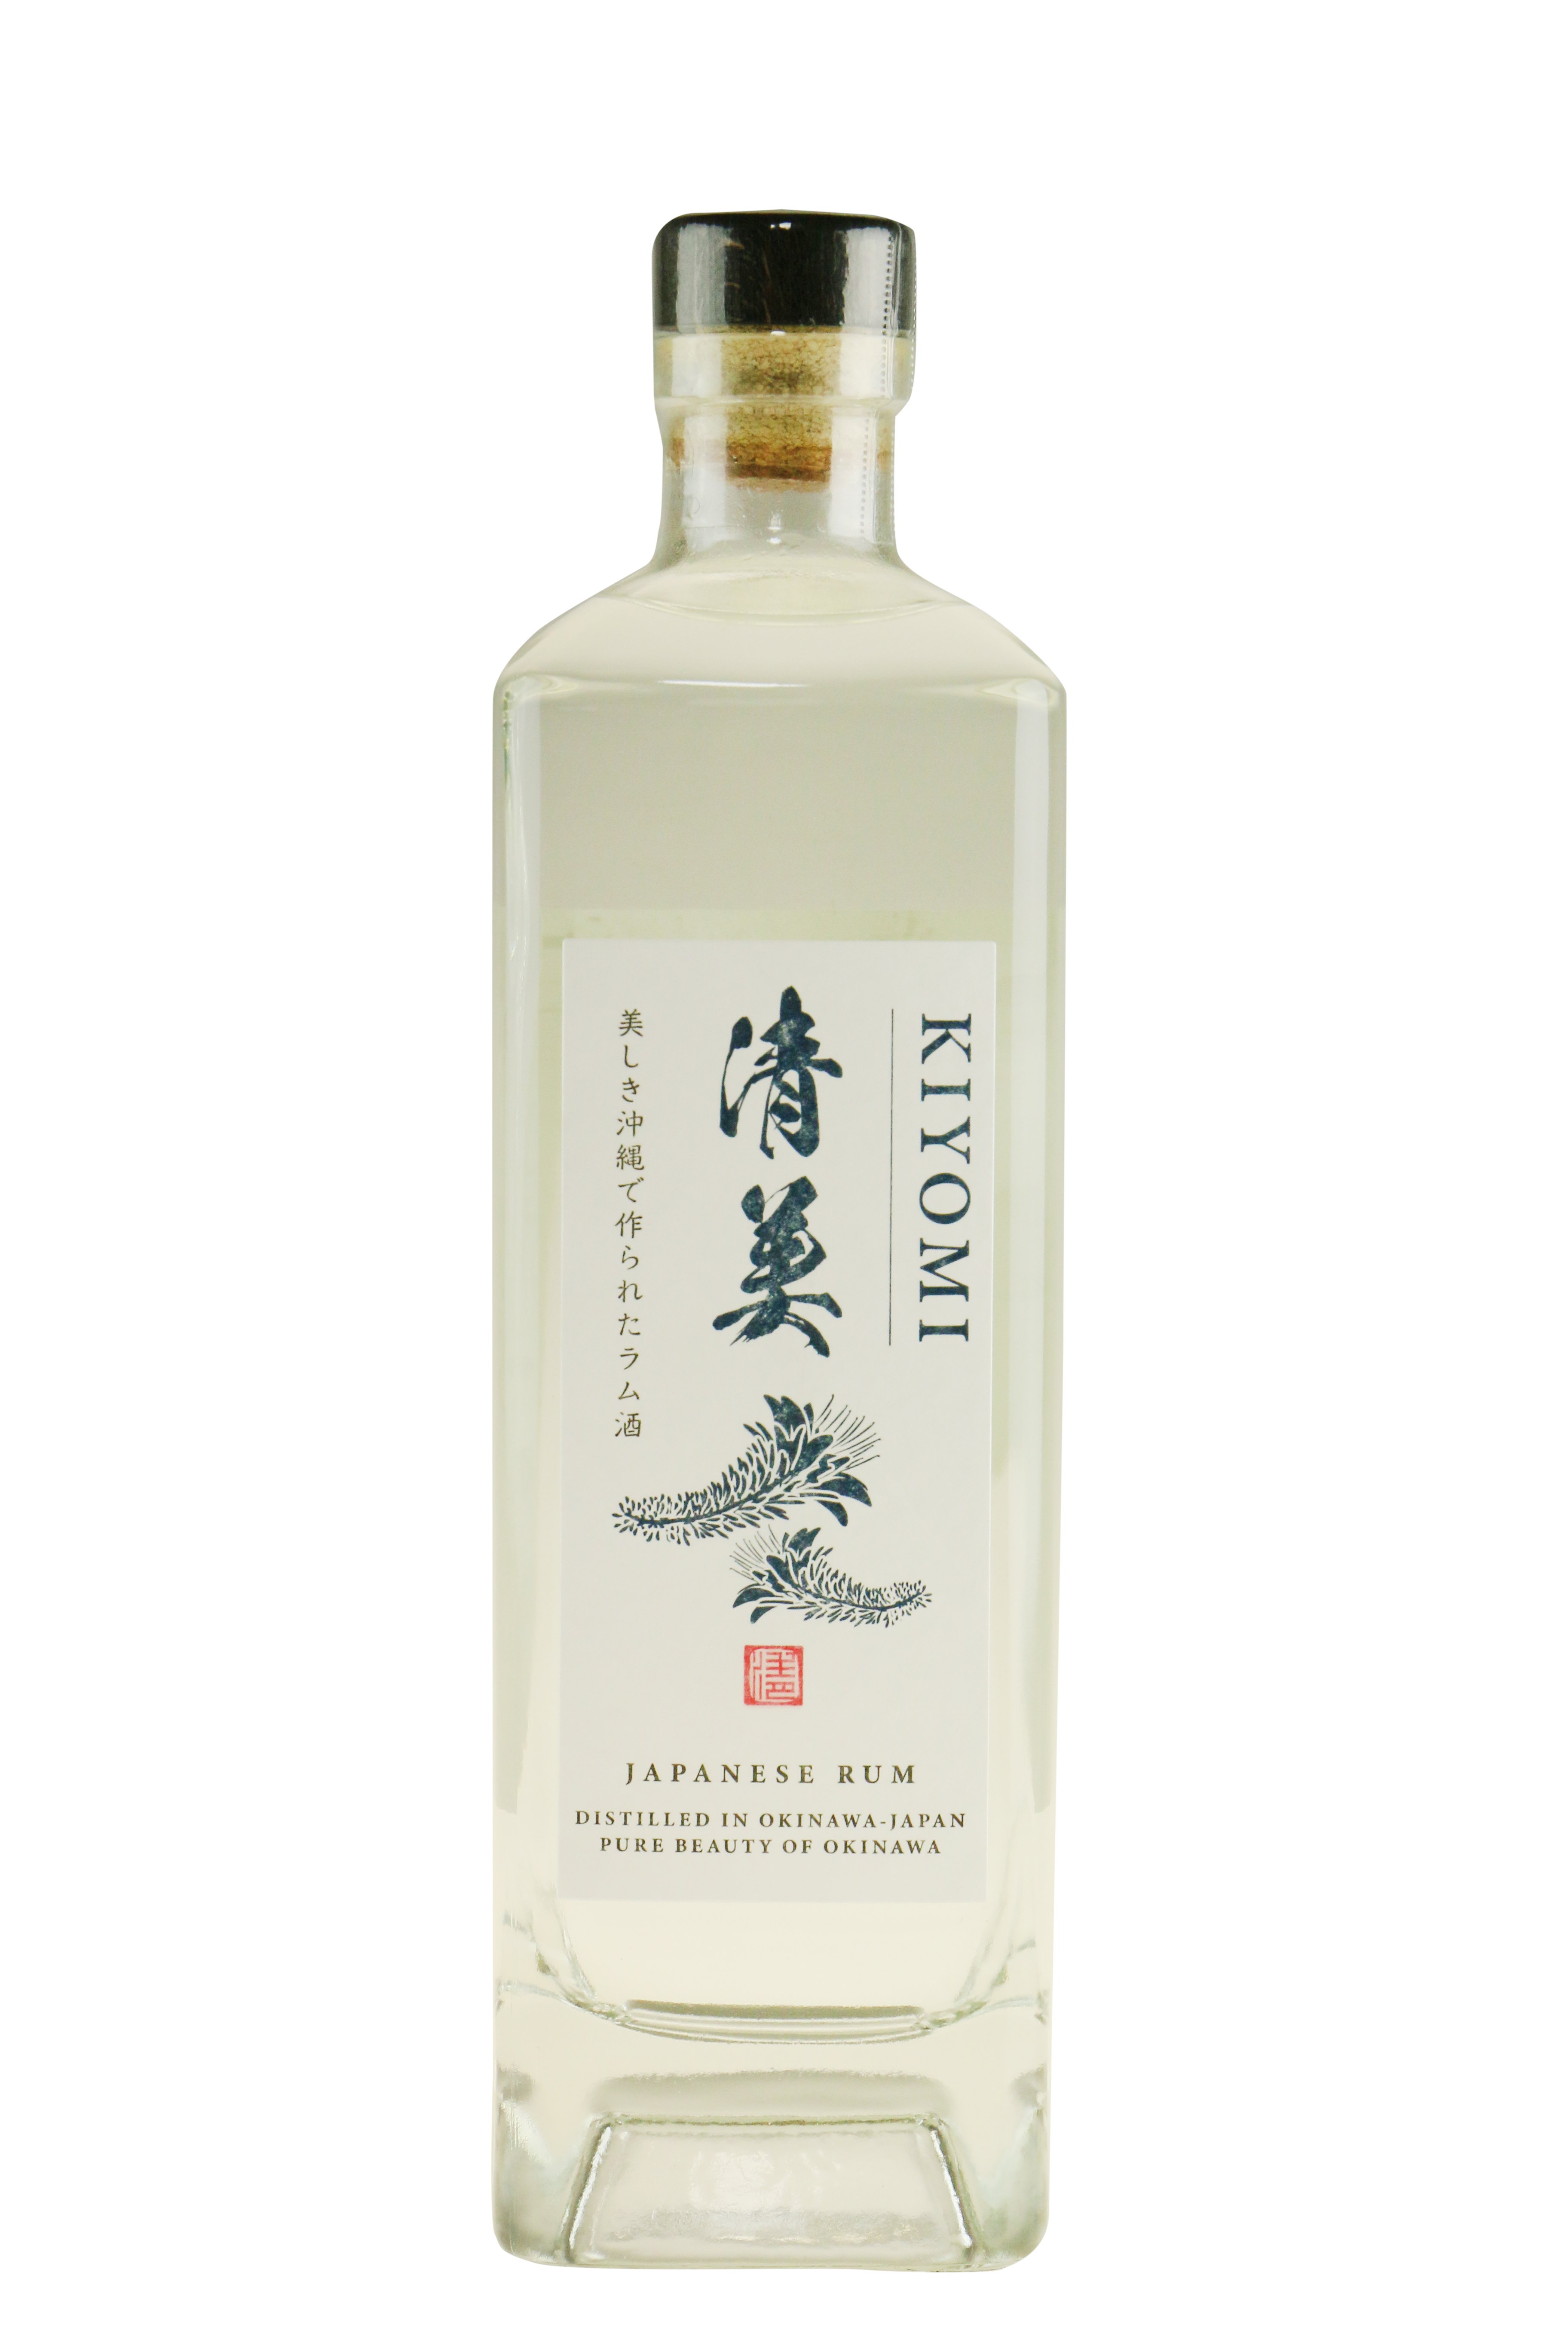 Okinawa Kiyomi White Rom - 40% - HVID ROM - VIN MED MERE .DK